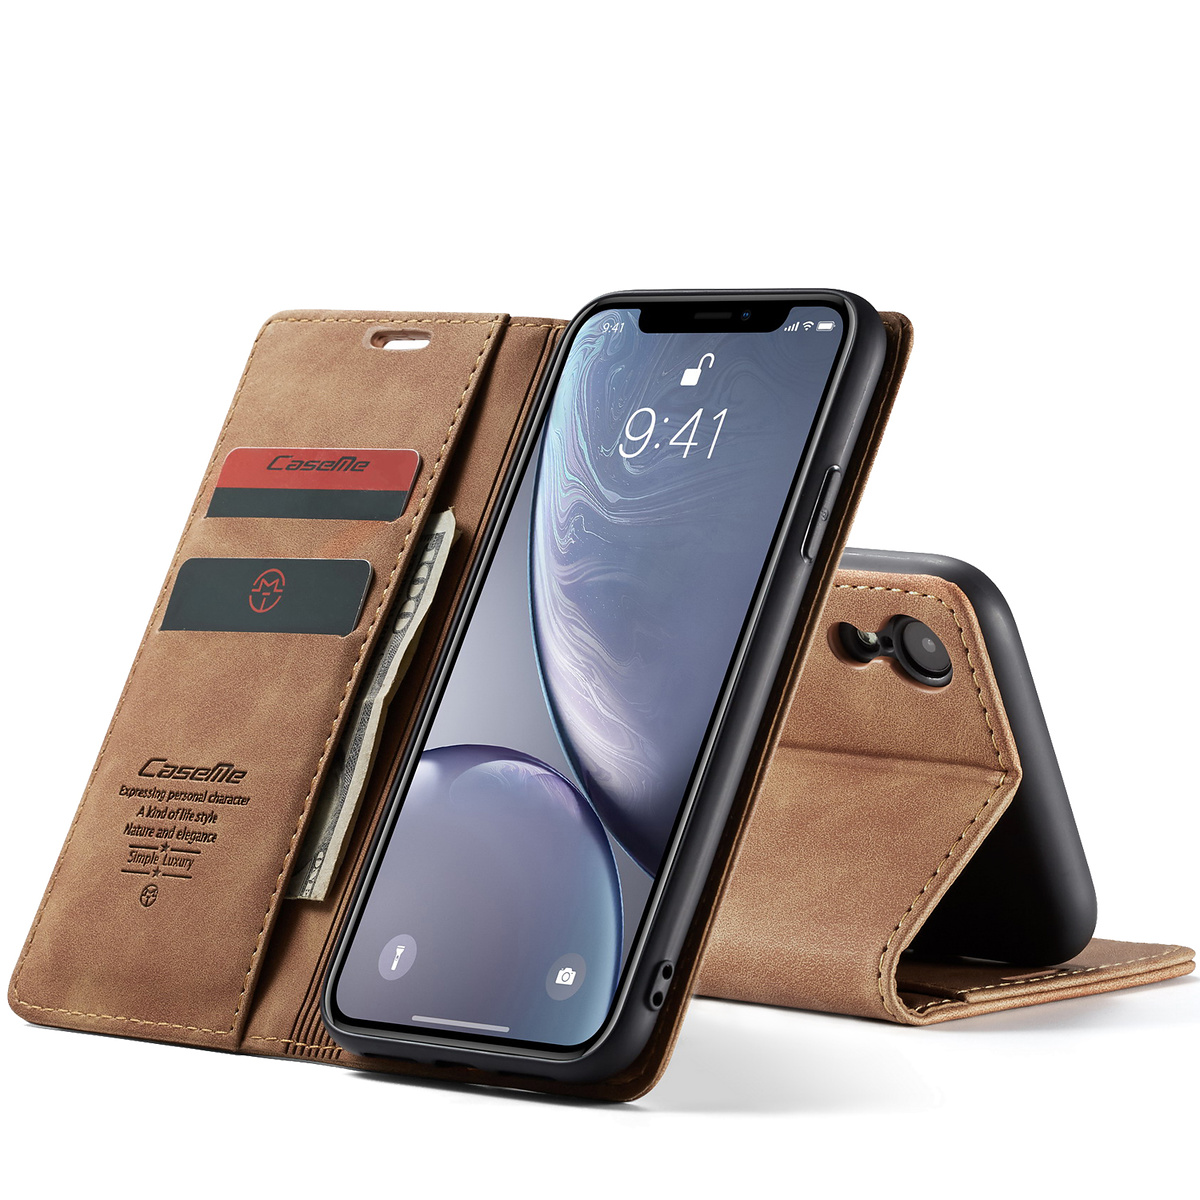 CaseMe plånboksfodral med ställ till iPhone XR, brun